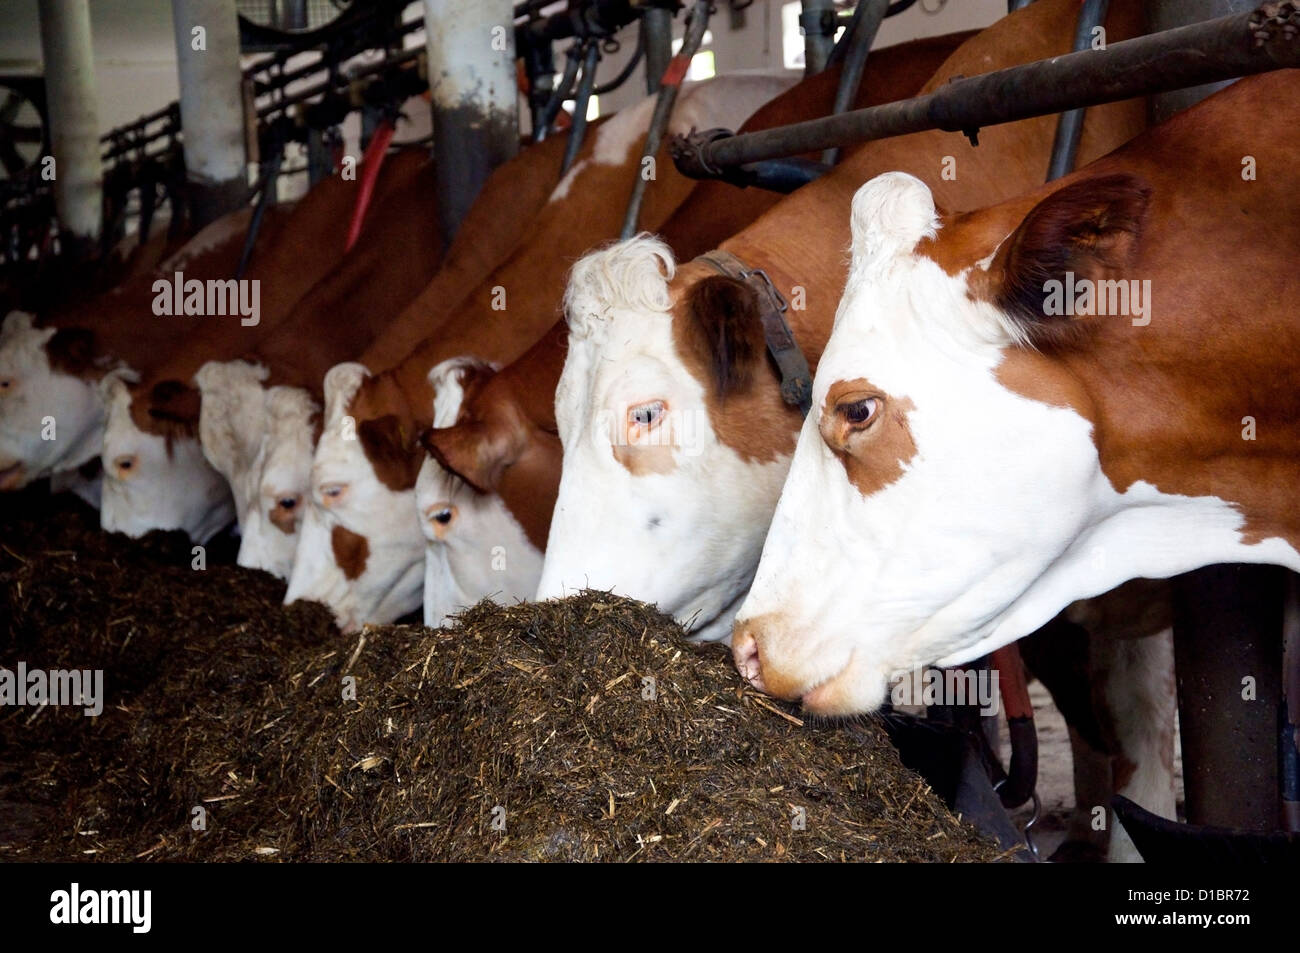 L'alimentation des vaches dans une grange Banque D'Images